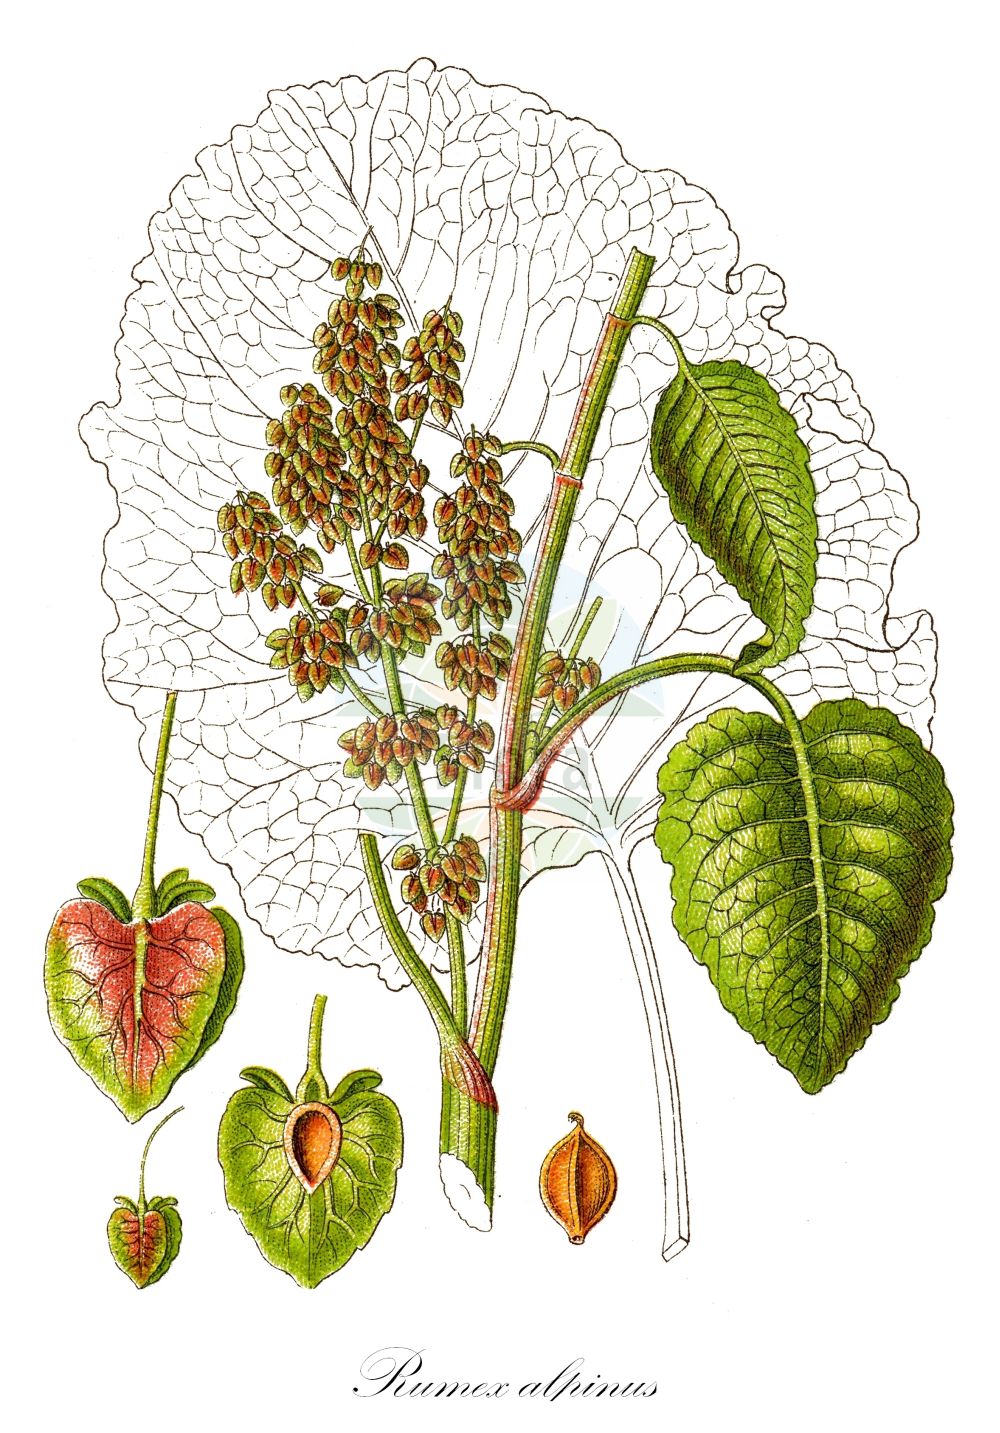 Historische Abbildung von Rumex alpinus (Alpen-Ampfer - Monk's-rhubarb). Das Bild zeigt Blatt, Bluete, Frucht und Same. ---- Historical Drawing of Rumex alpinus (Alpen-Ampfer - Monk's-rhubarb). The image is showing leaf, flower, fruit and seed.(Rumex alpinus,Alpen-Ampfer,Monk's-rhubarb,Rumex alpinus,Rumex pseudoalpinus,Alpen-Ampfer,Monk's-rhubarb,Alpine Dock,Munk's Rhubarb,Alpine Rhubarb,Rumex,Ampfer,Sorrel,Polygonaceae,Knöterichgewächse,Knotgrass family,Blatt,Bluete,Frucht,Same,leaf,flower,fruit,seed,Sturm (1796f))